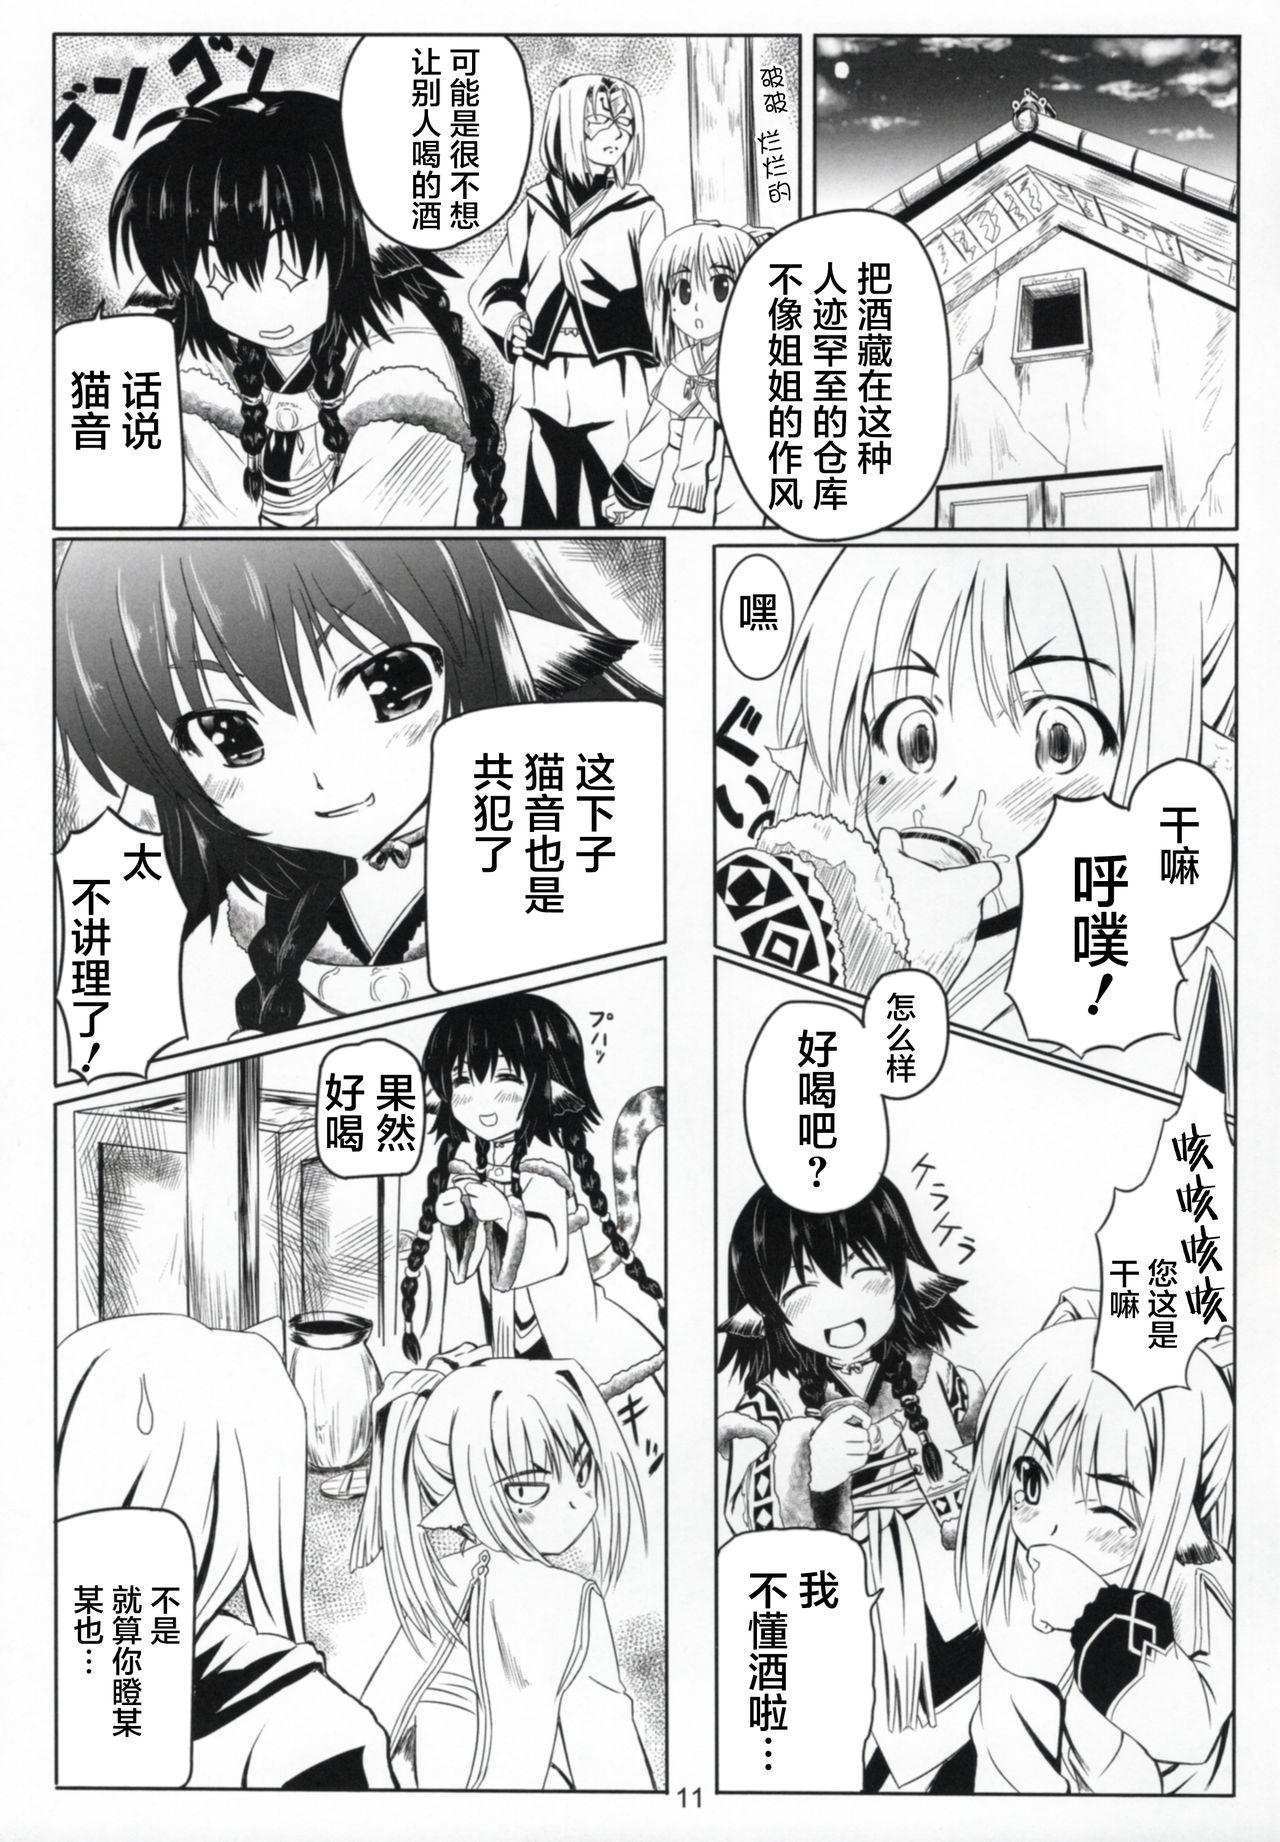 Anale Himitsu no Yakai - Utawarerumono itsuwari no kamen Gay Pawnshop - Page 11